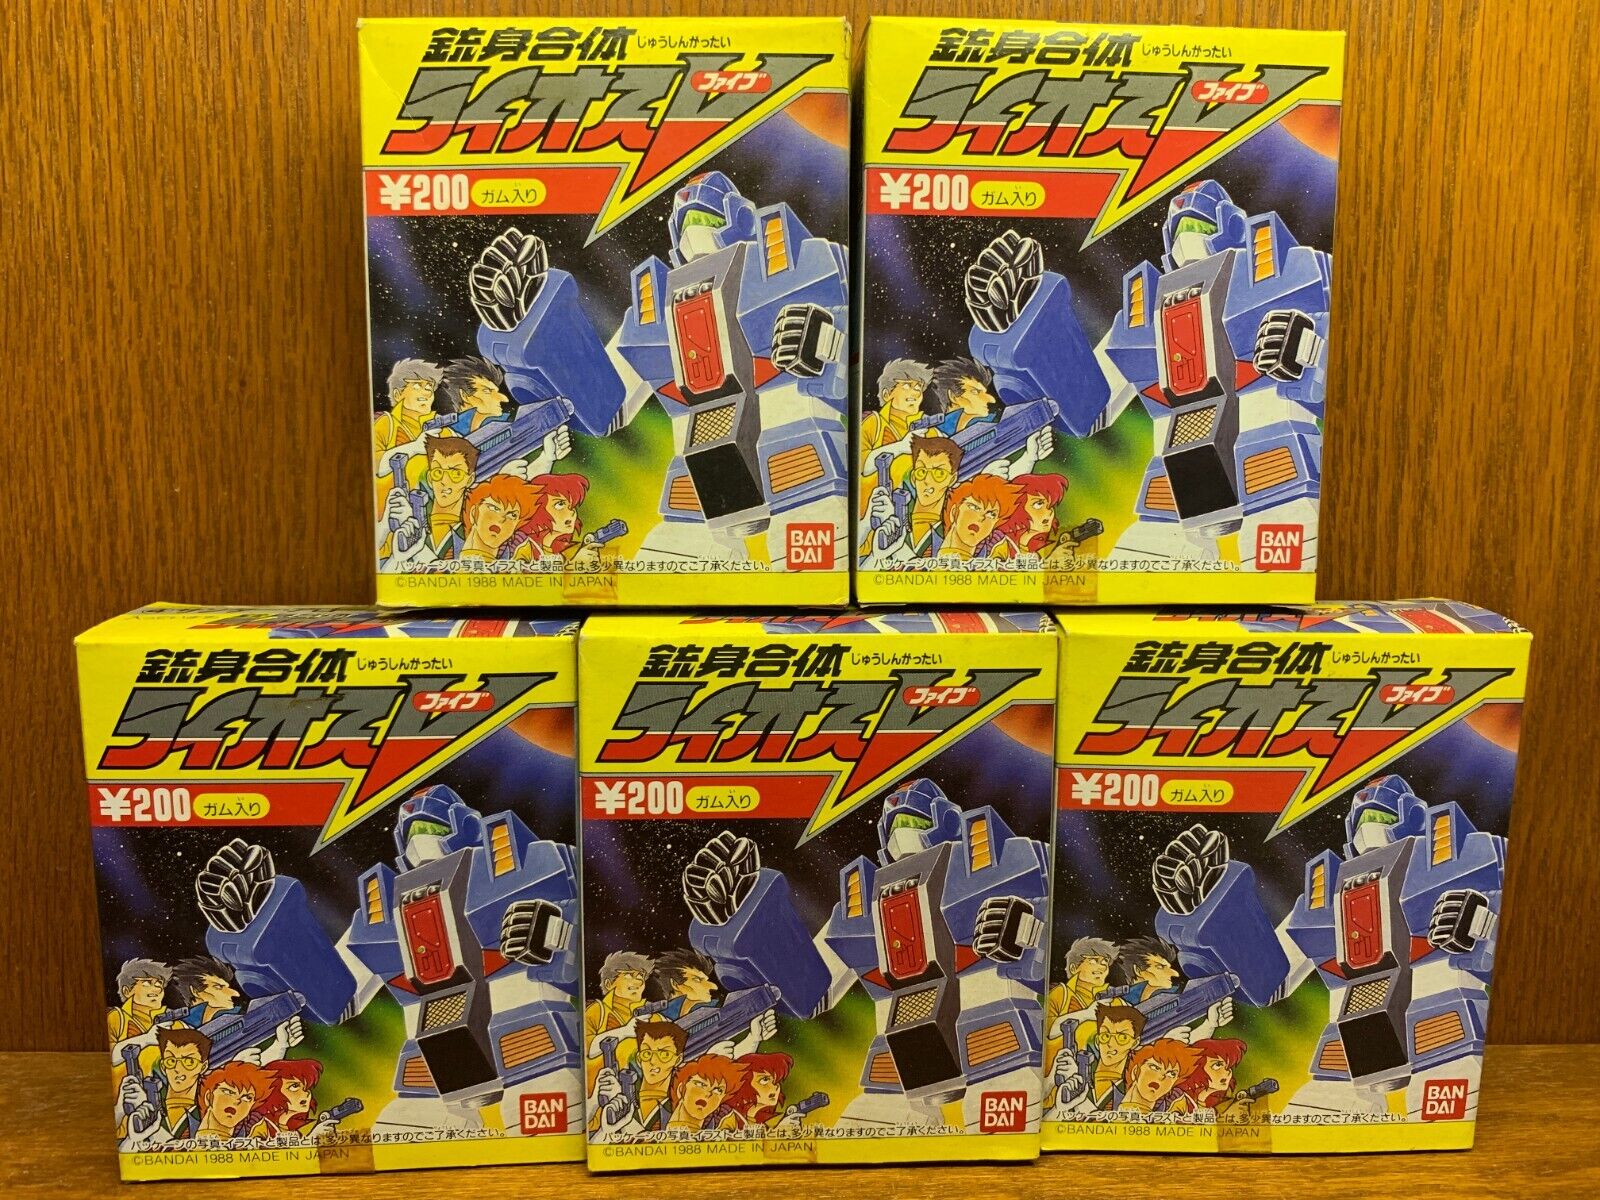 Rare 1988 Bandai Raios 5 Shokugan Plastic Model Kits Set of 5 Made in Japan